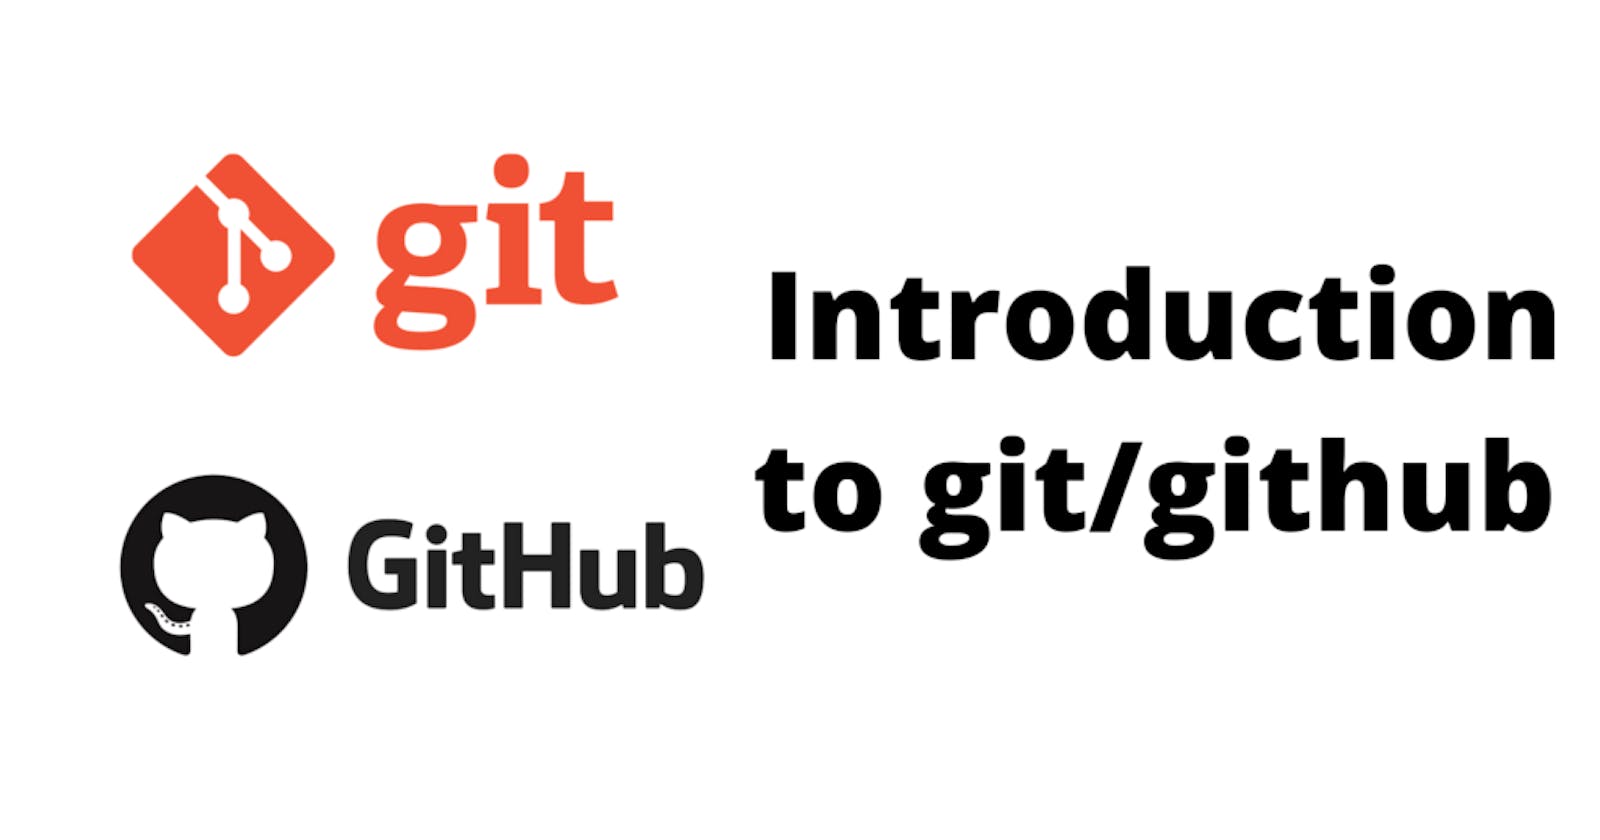 Blog 1: Introduction to Git/Github